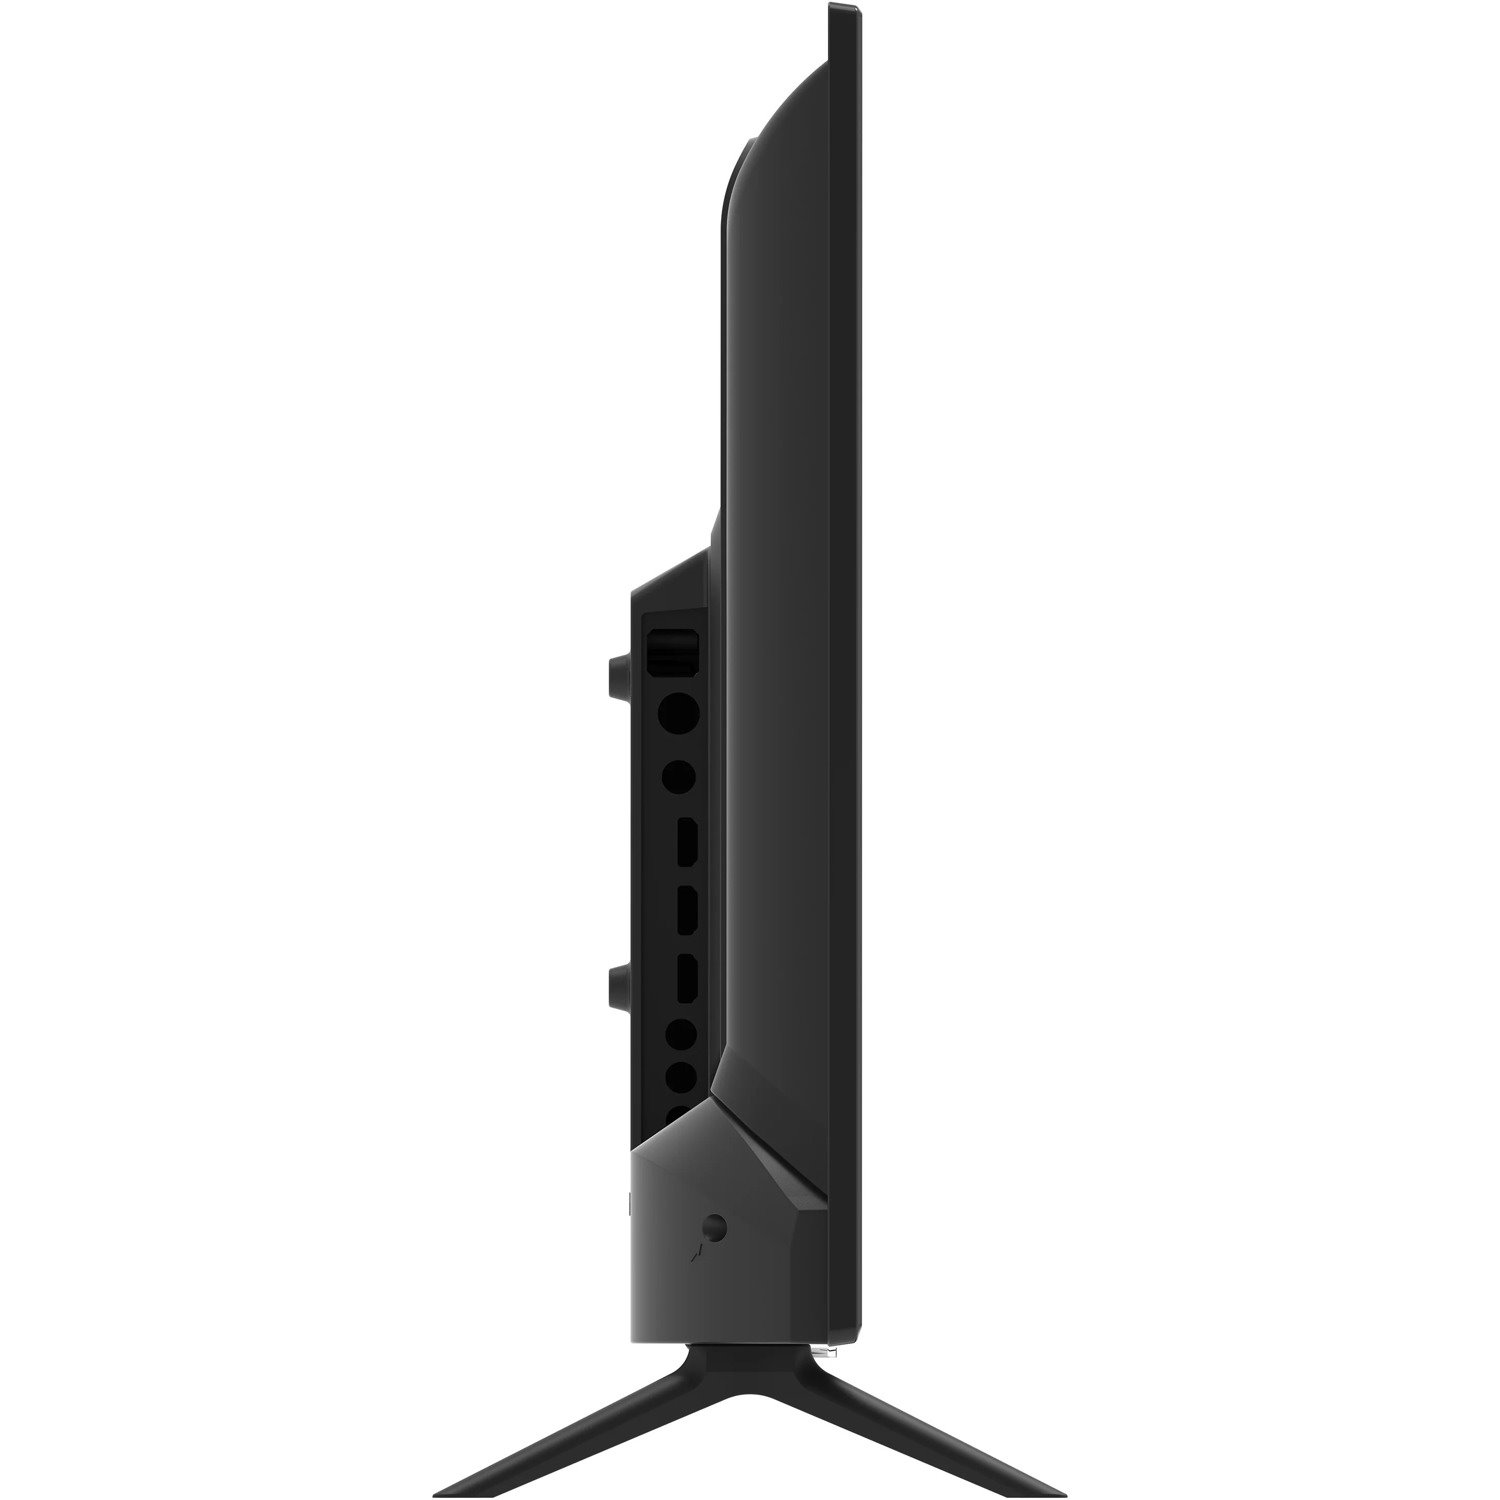 Supersonic SC-3250GTV 32" Smart LED-LCD TV - HDTV - Black